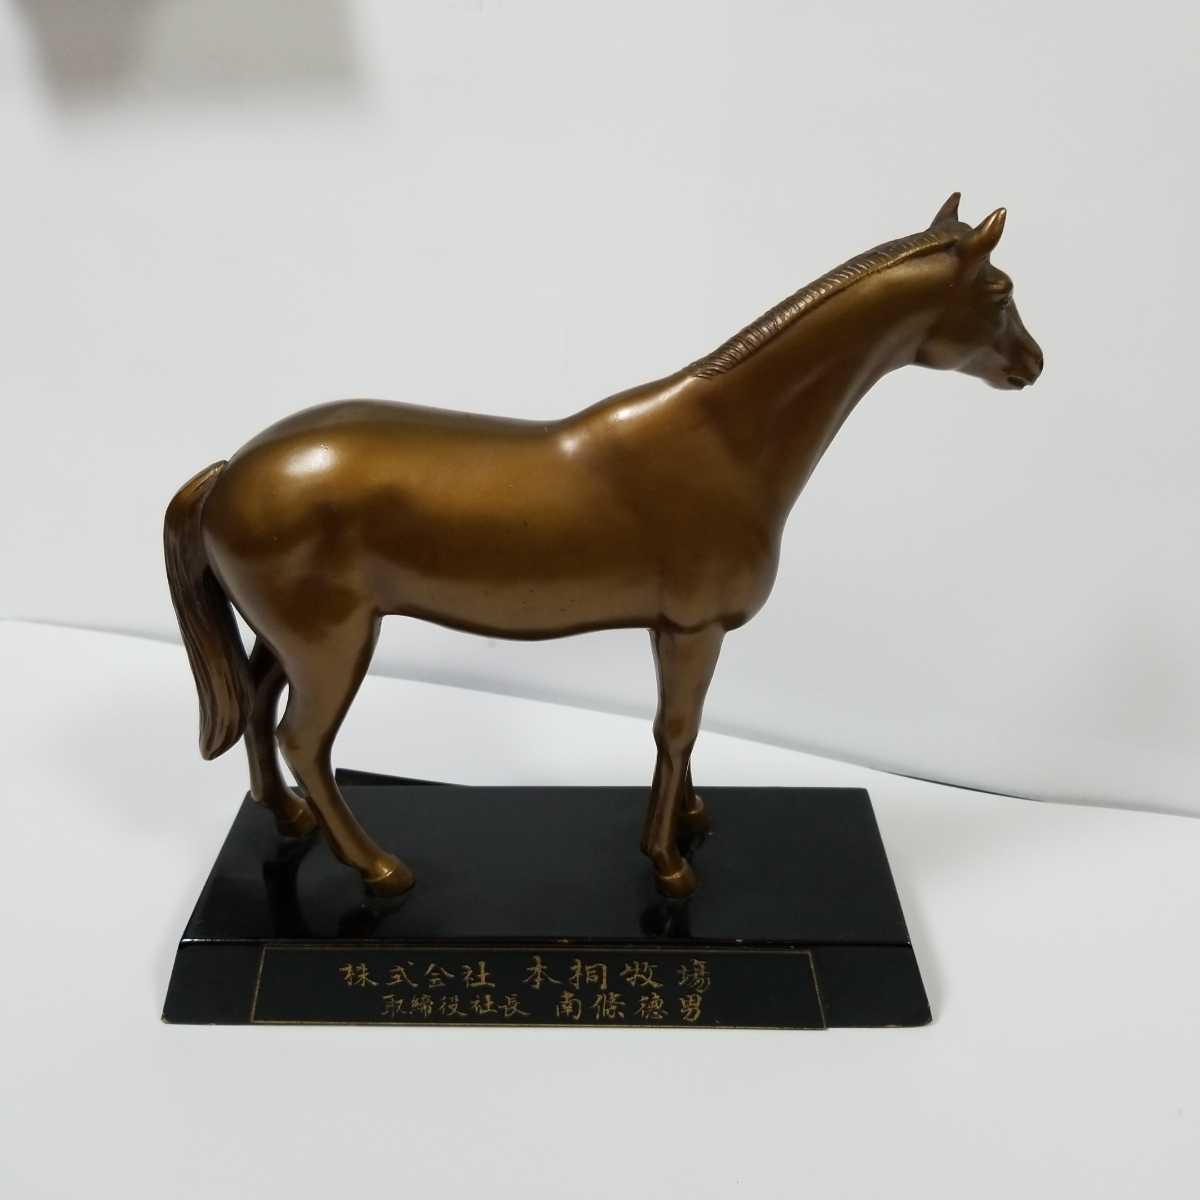 馬の銅像 チャイナロック号 本桐牧場 記念品 ヴィンテージ物 競馬記念品 ハイセイコーの父 JRA レア物です。_画像6